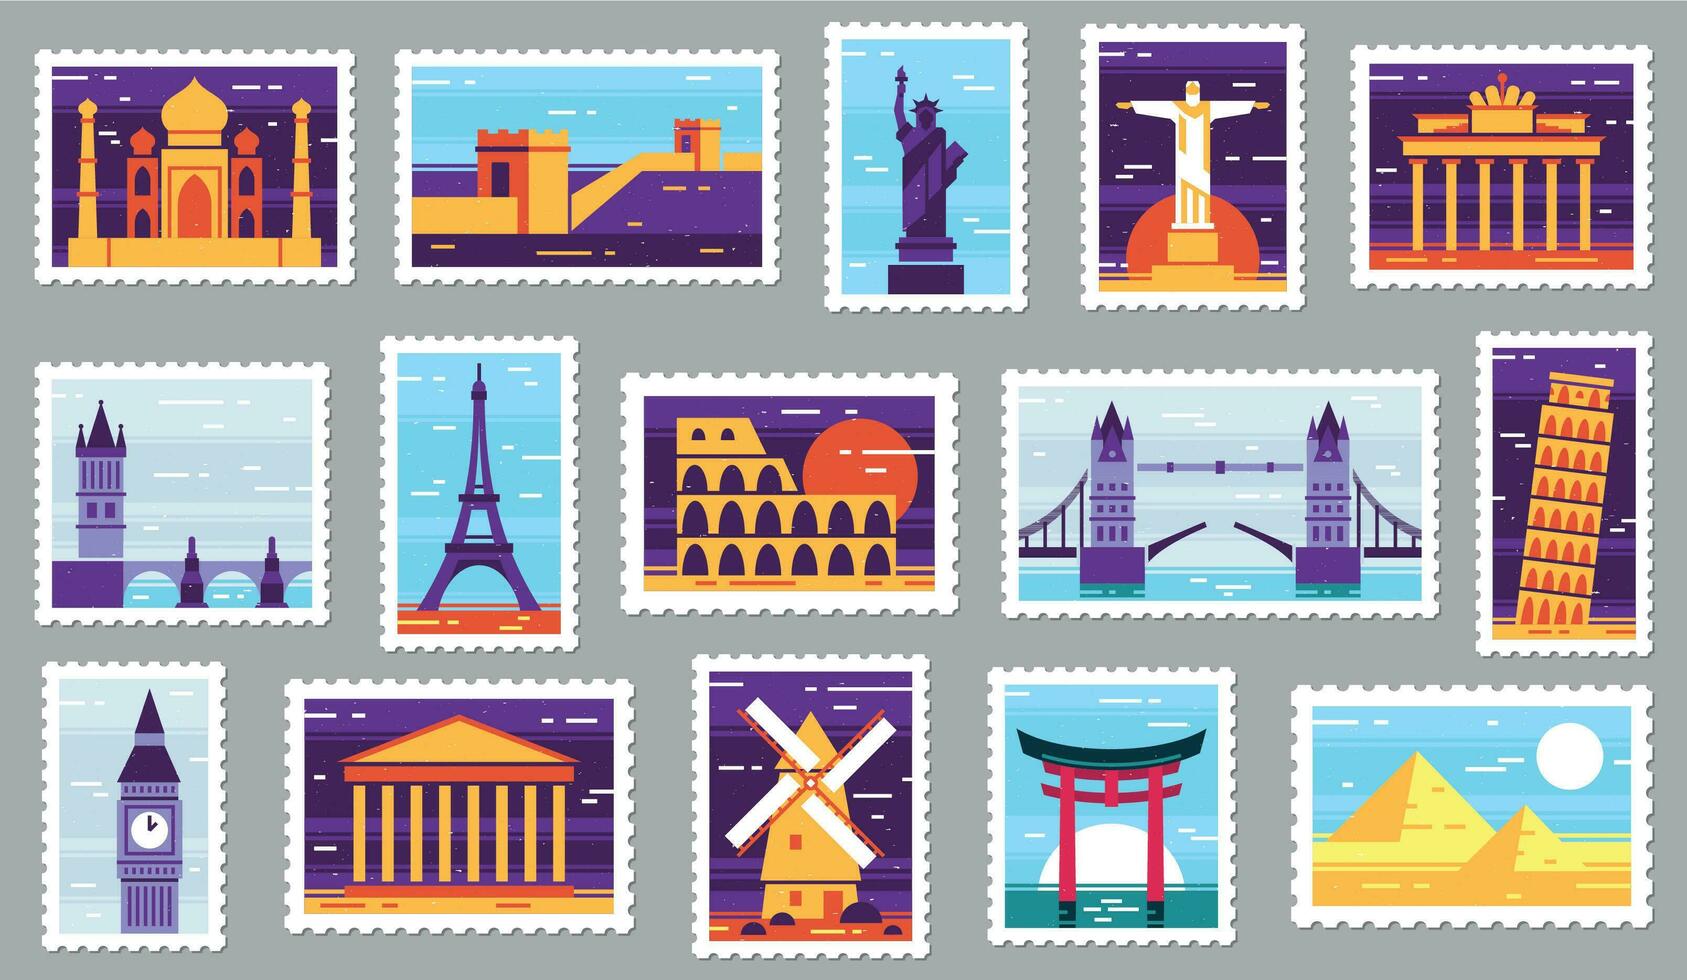 mundo cidades postar selos. viagem postagem carimbo projeto, cidade atrações cartão postal e Cidade vetor ilustração conjunto